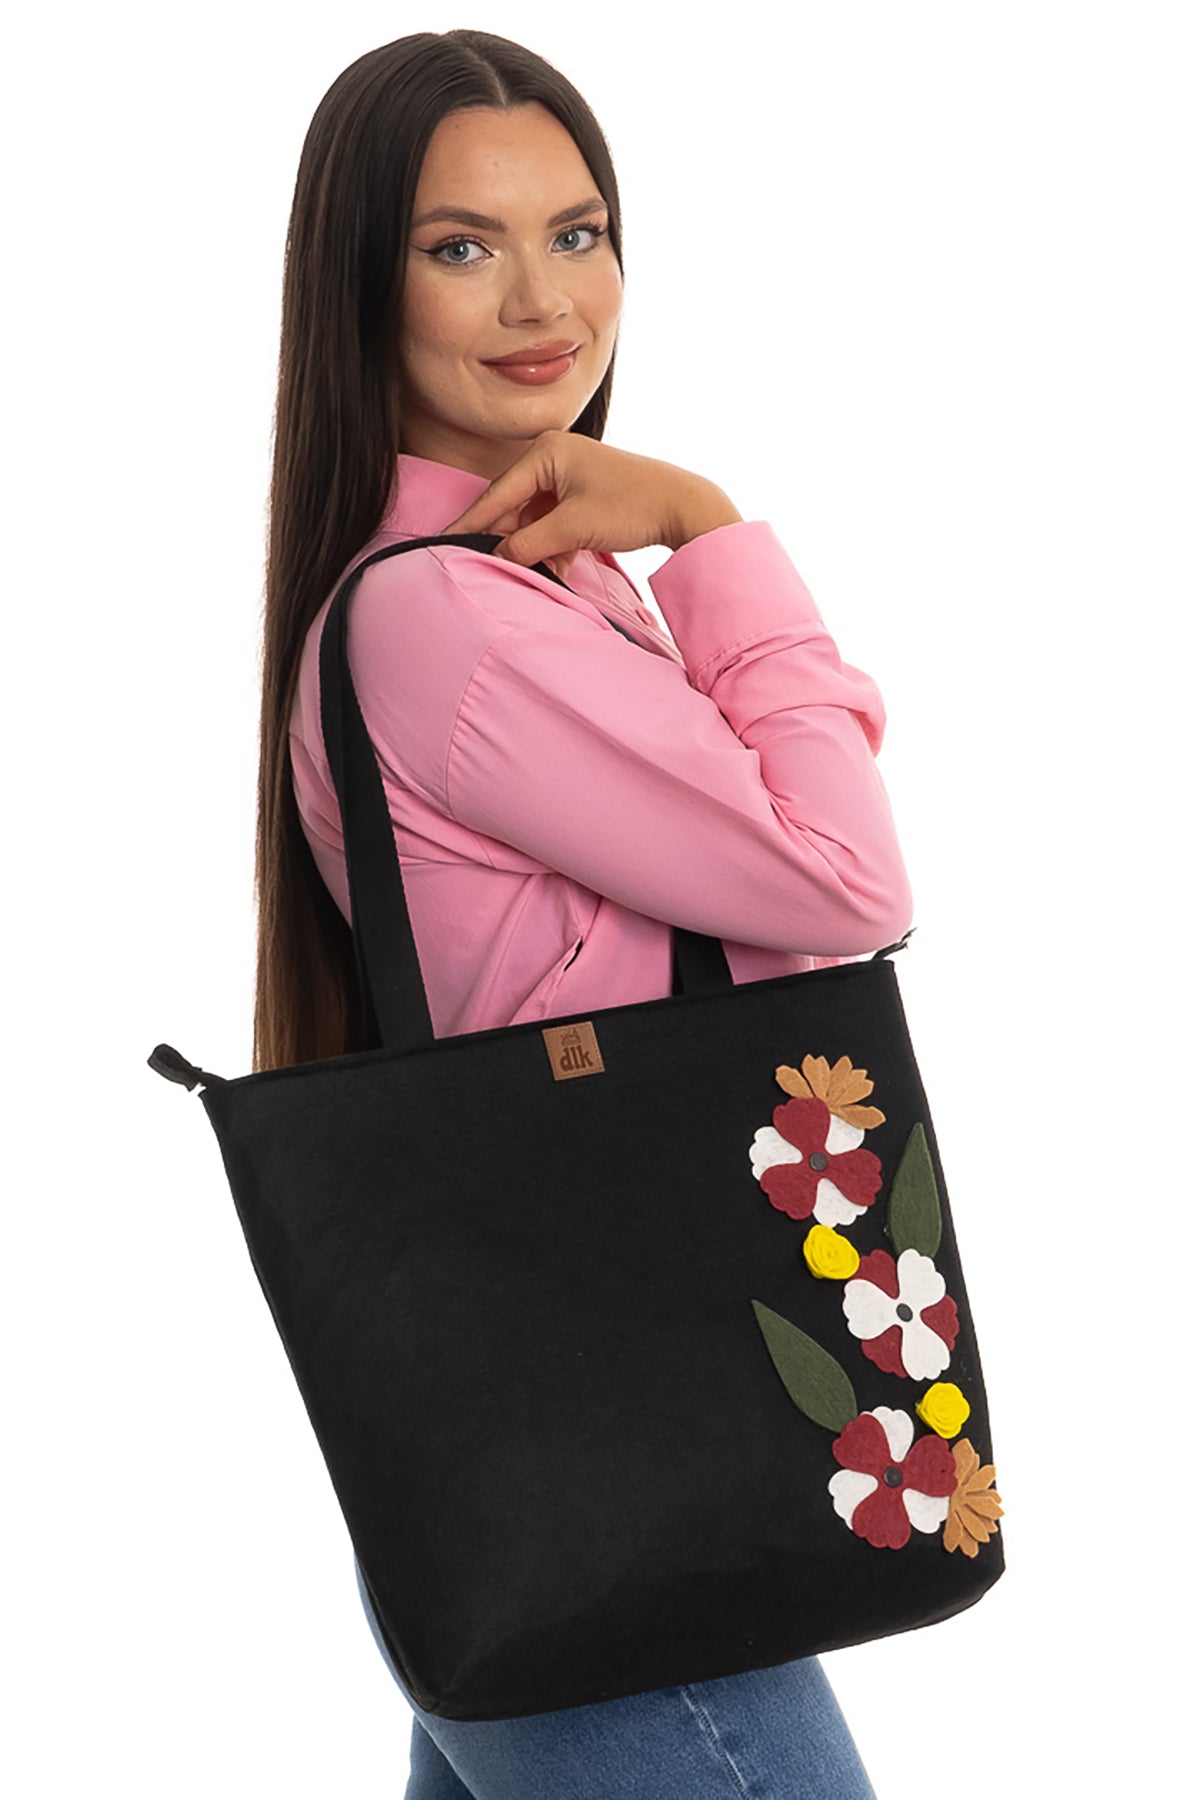 Handmade Large Size Felt Shoulder Bag - Flower Bag -40x35cm